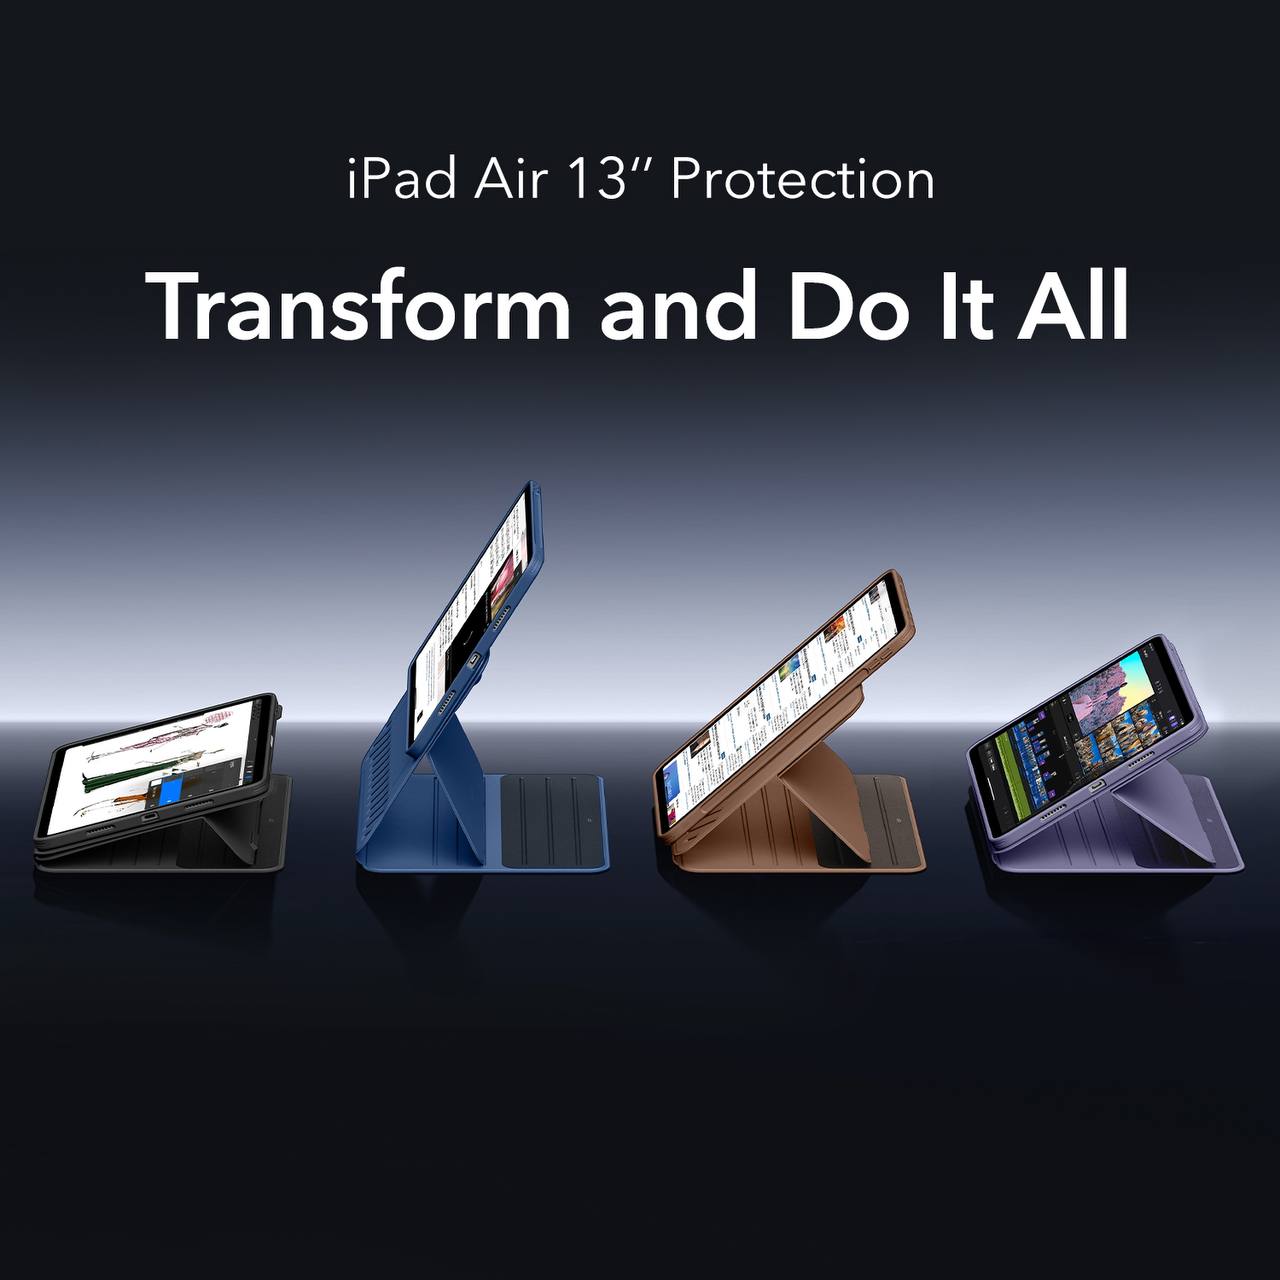 Чехол для новой вариации iPad Air подтверждает её размеры – они идентичны iPad Pro 12,9”.